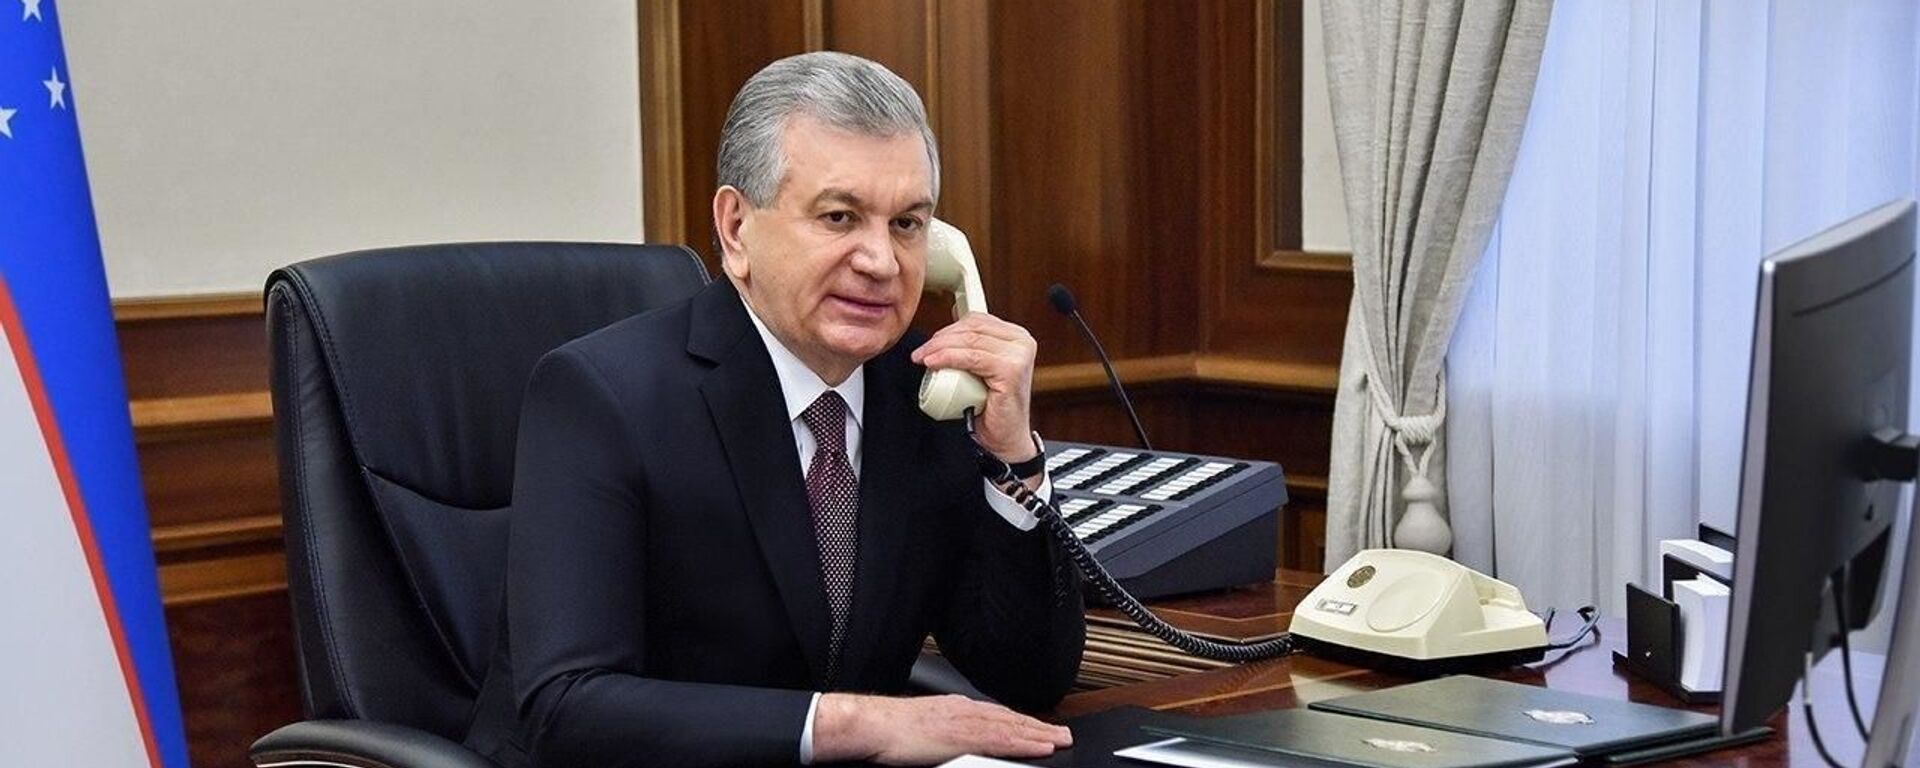 Prezident Shavkat Mirziyoyev razgovarivayet po telefonu - Sputnik O‘zbekiston, 1920, 18.08.2021